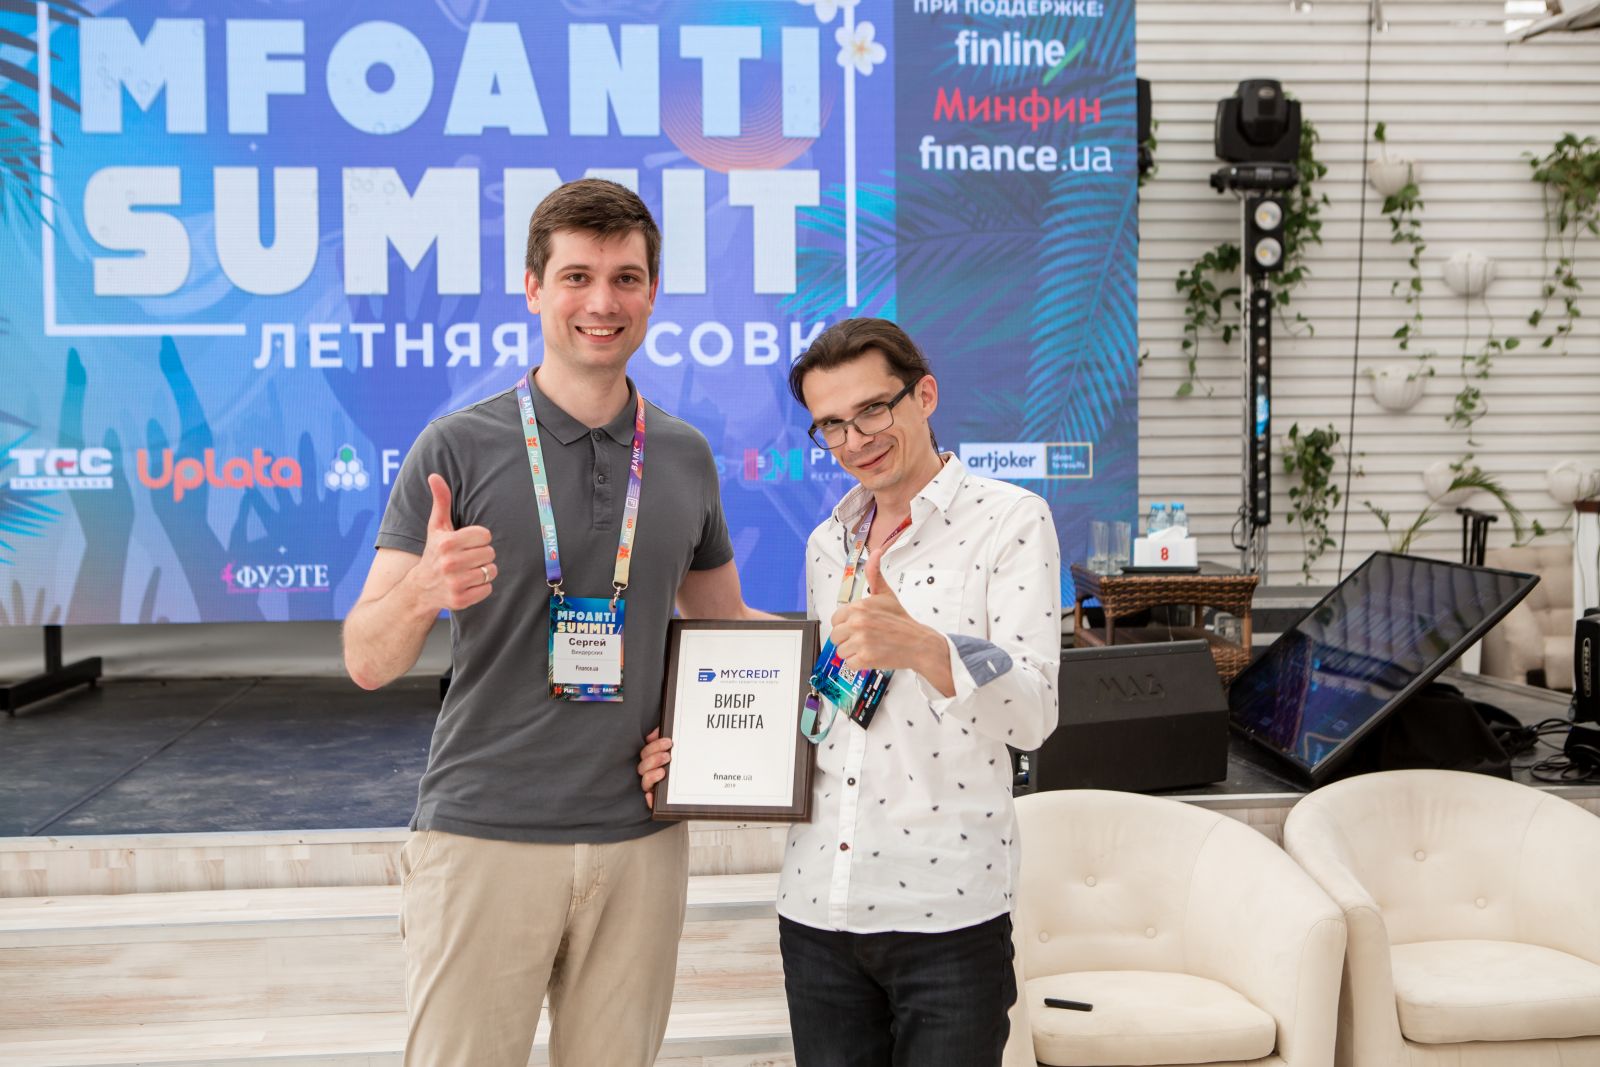 Директор Finance.ua Сергій Віндерських (ліворуч) вручає нагороду MyCredit за перемогу в номінації «Вибір клієнта».